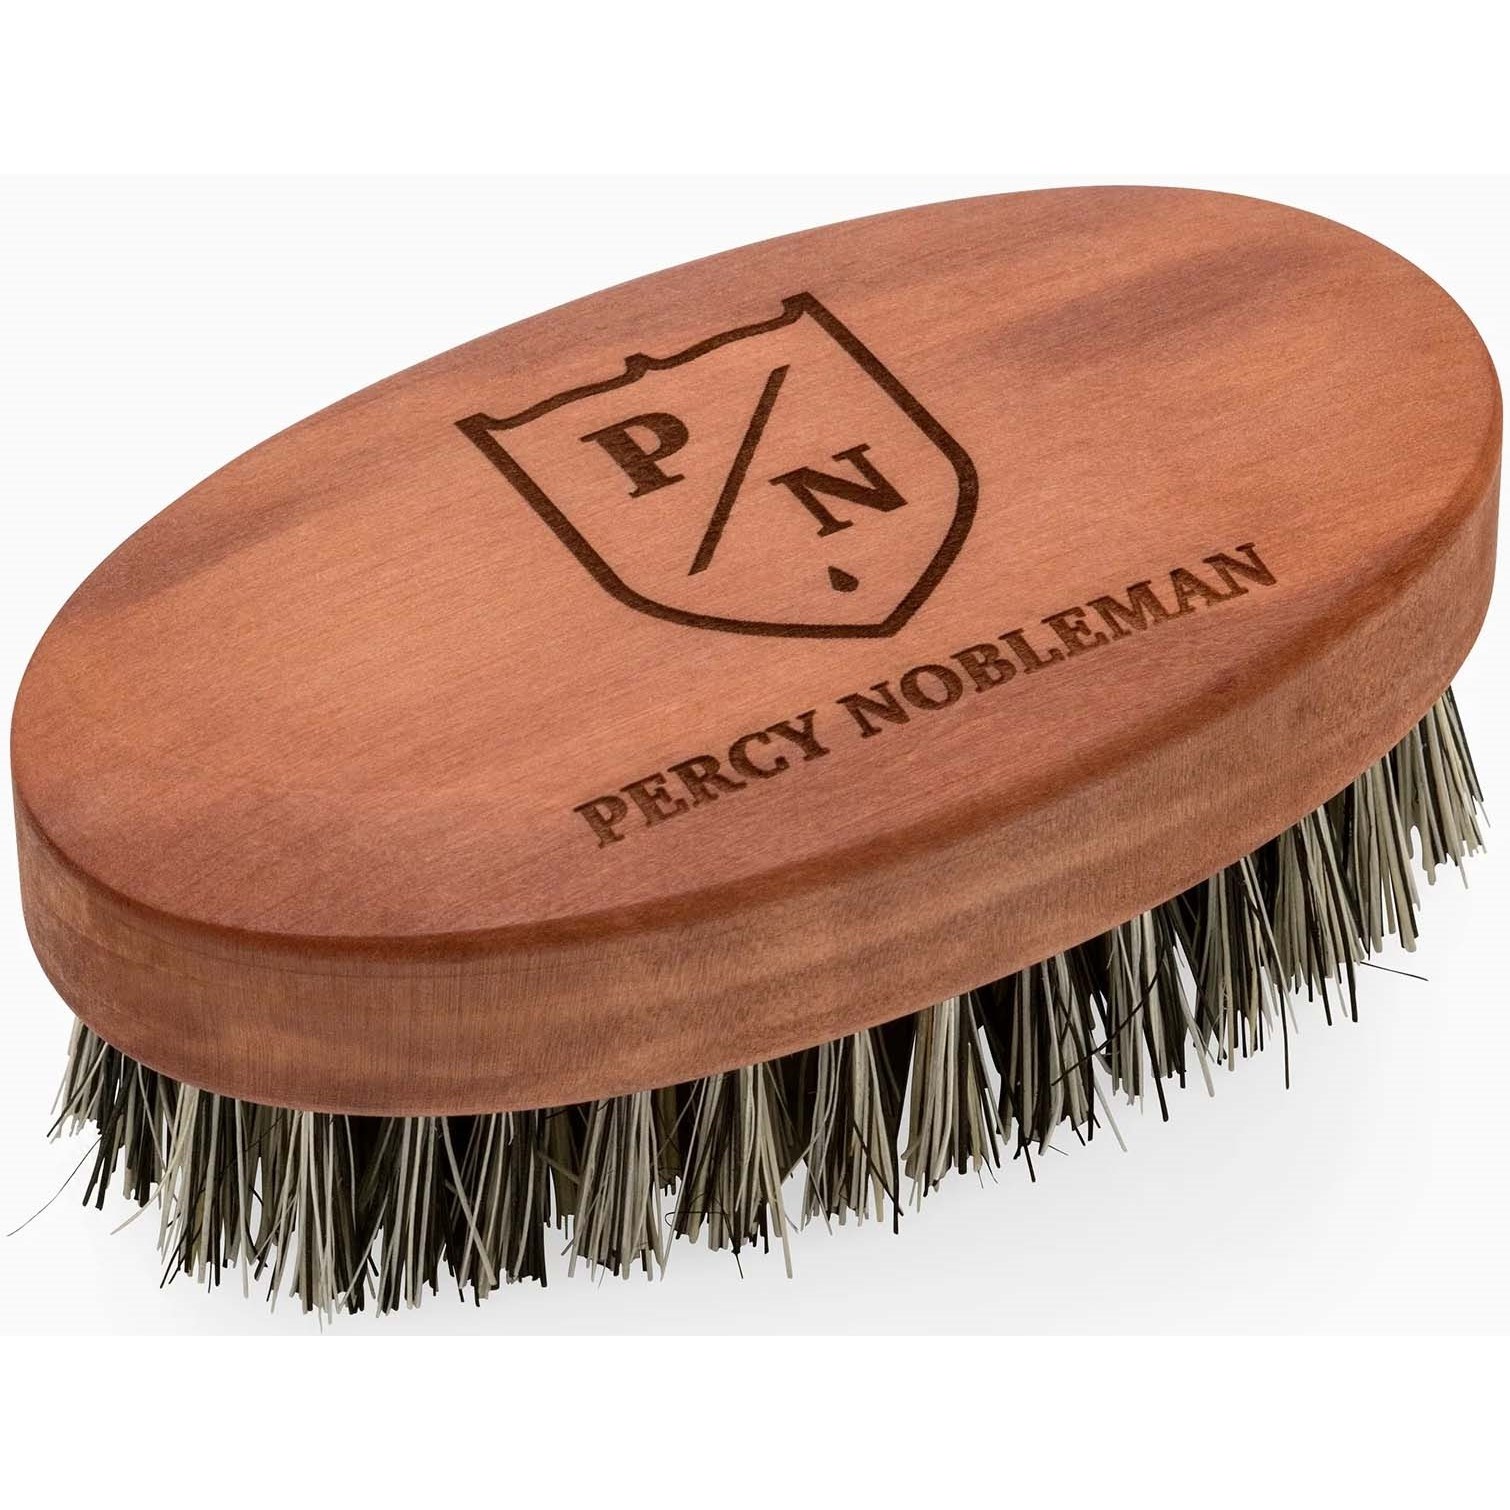 Läs mer om Percy Nobleman Beard Brush Vegan Friendly